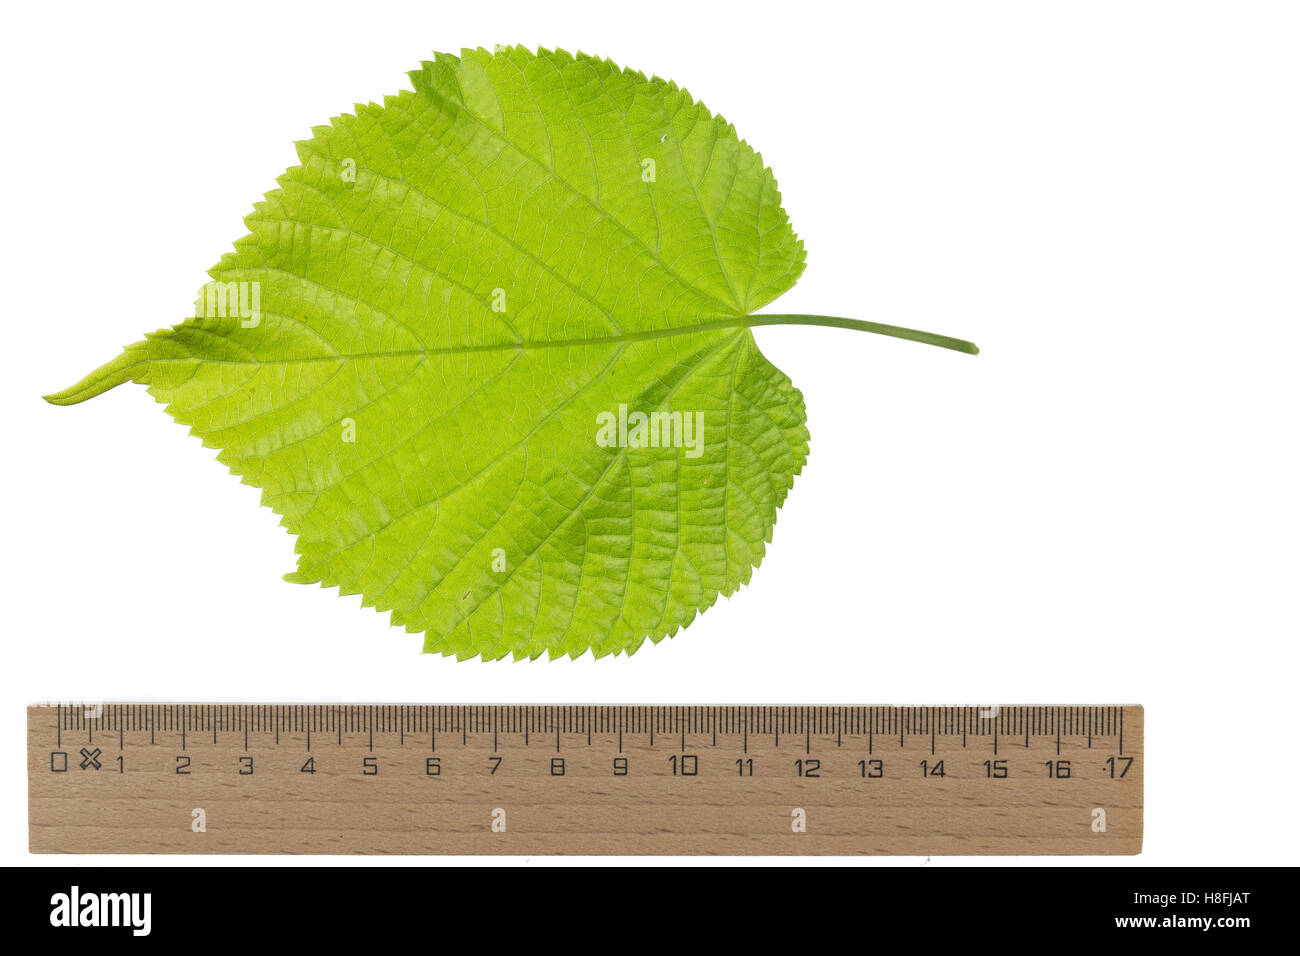 Sommer-Linde, Sommerlinde, Linde, Tilia platyphyllos, Tilia grandifolia, large-leaved lime, Large Leaved Lime, largeleaf linden, Stock Photo